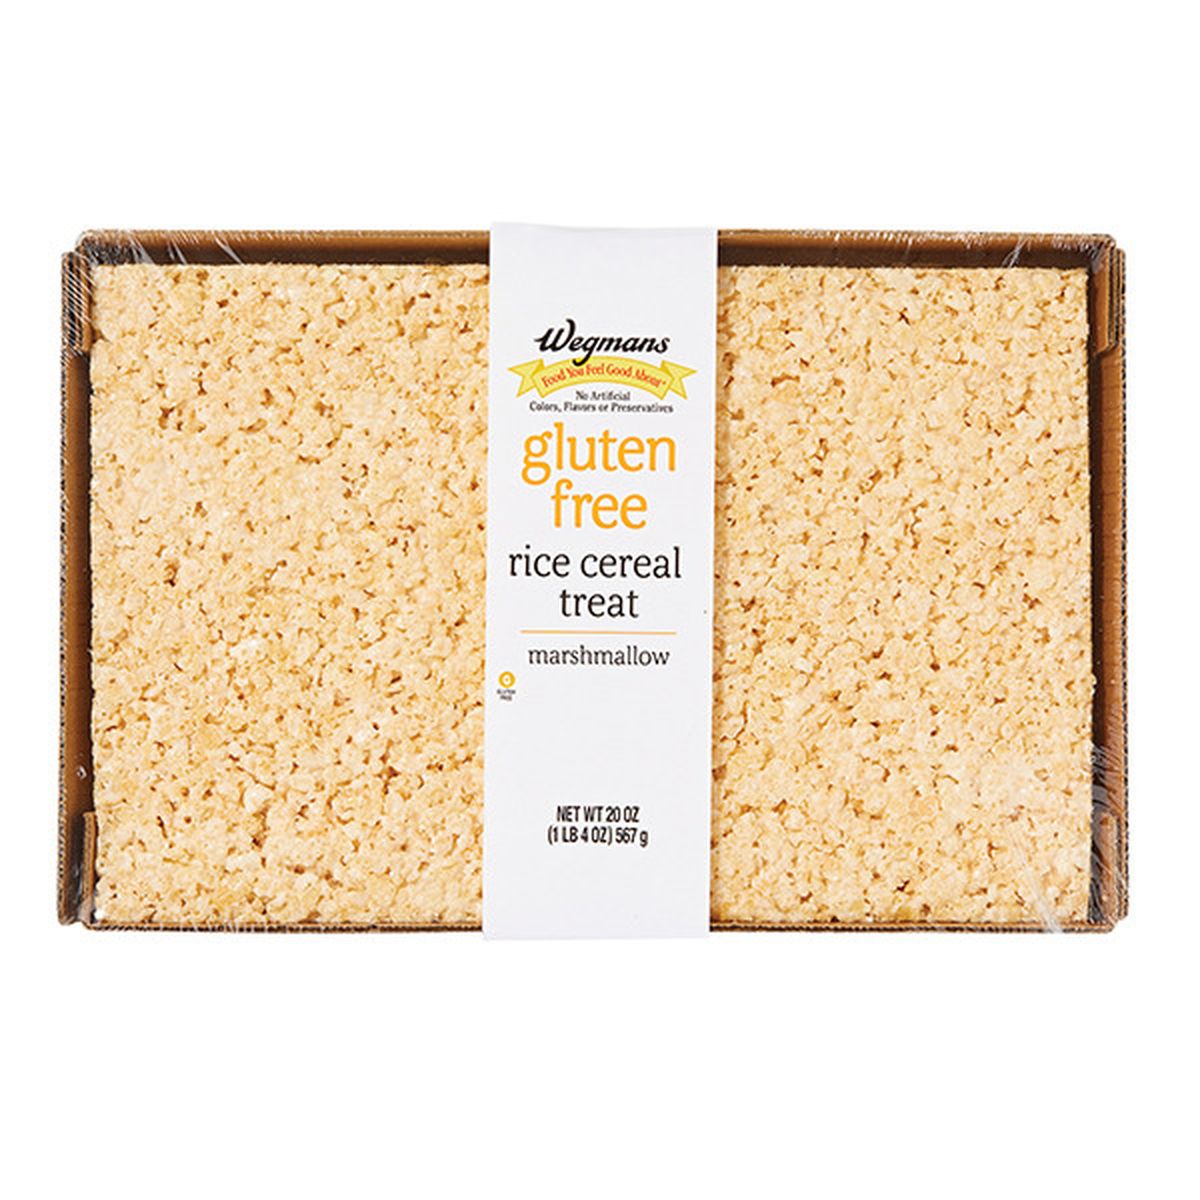 Calories in Wegmans Gluten Free Marshmallow Rice Cereal Treat